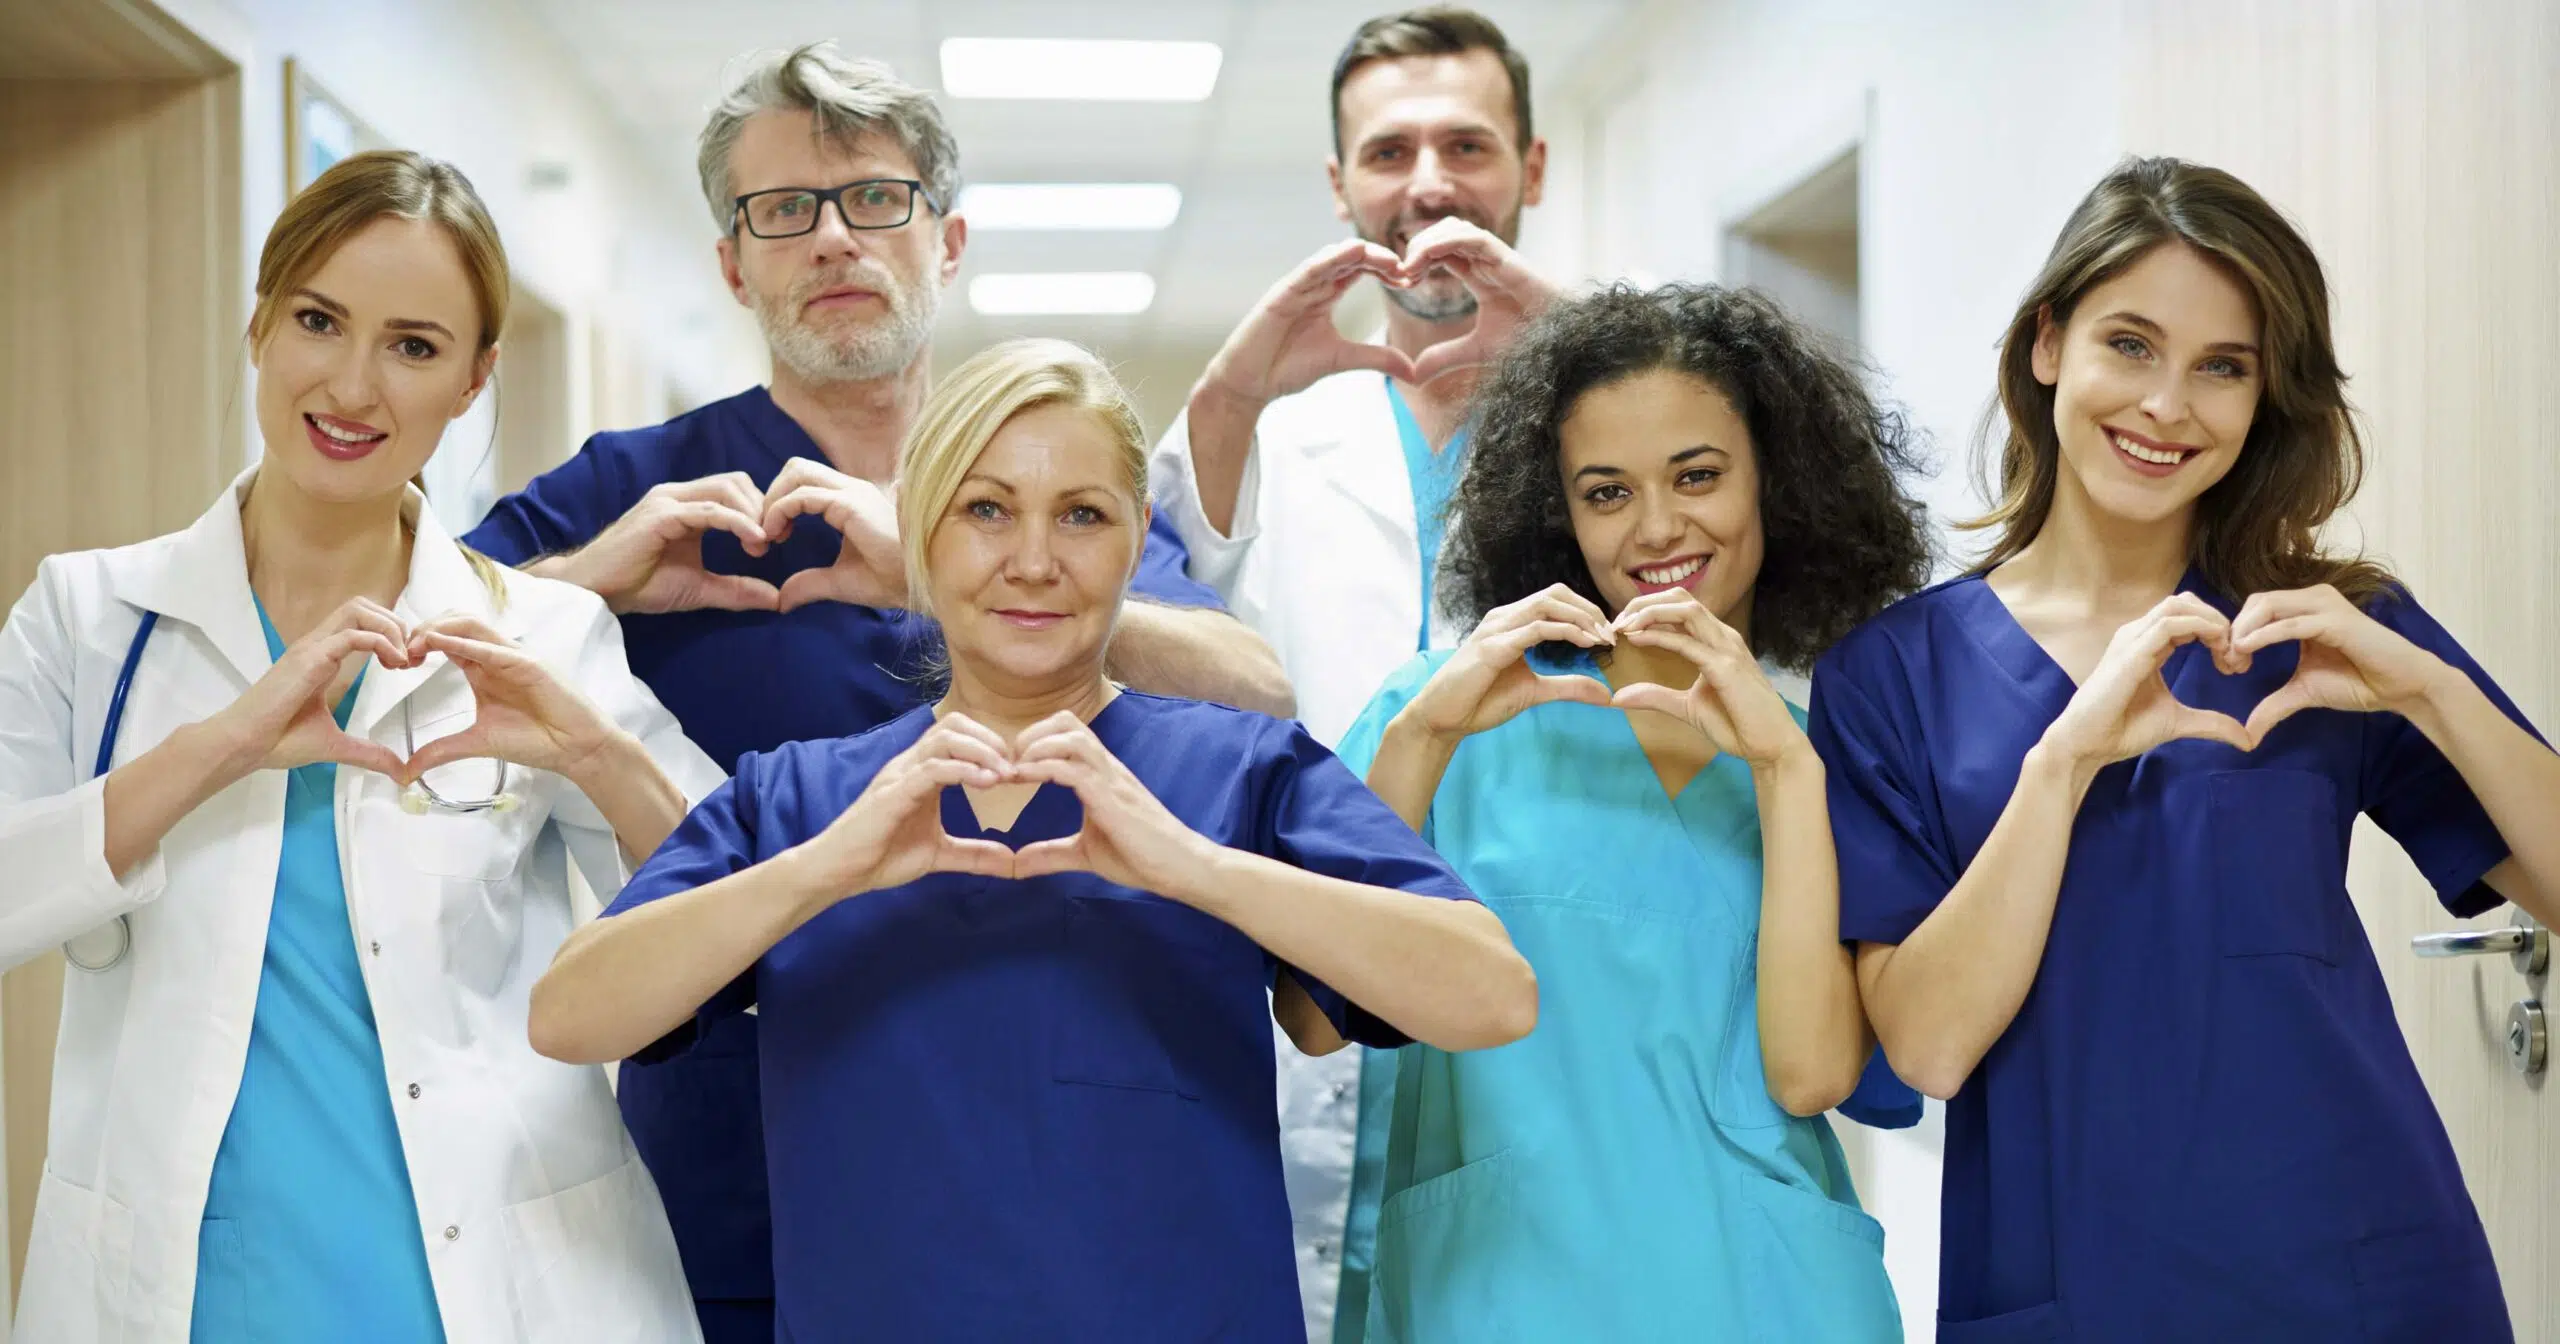 Nurses and doctors - cardiovascular care